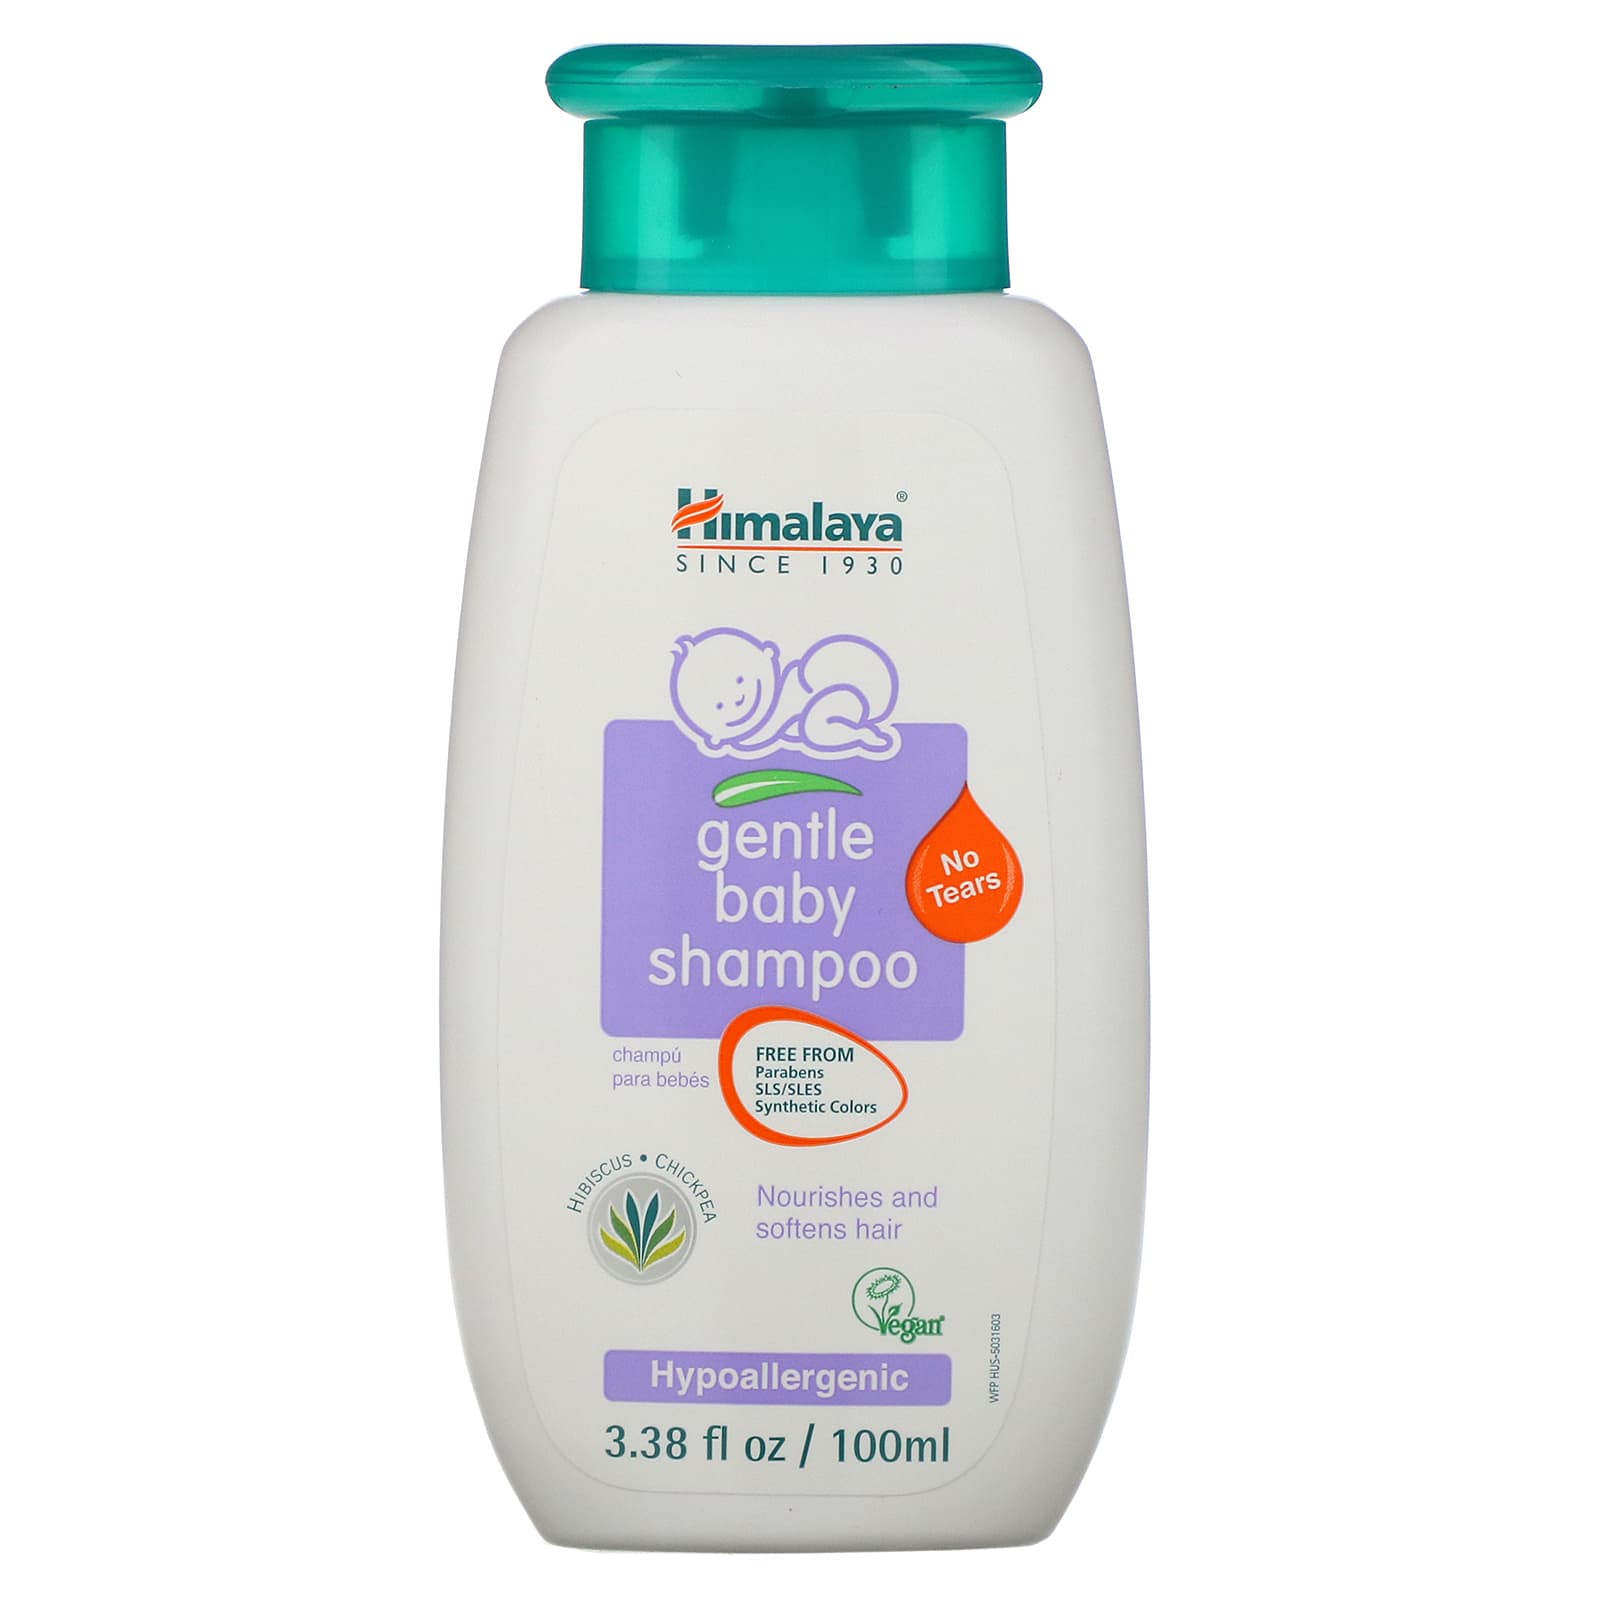 US dollar Bevestigen straf Himalaya, Gentle Baby Shampoo, 3.38 fl oz (100 ml)